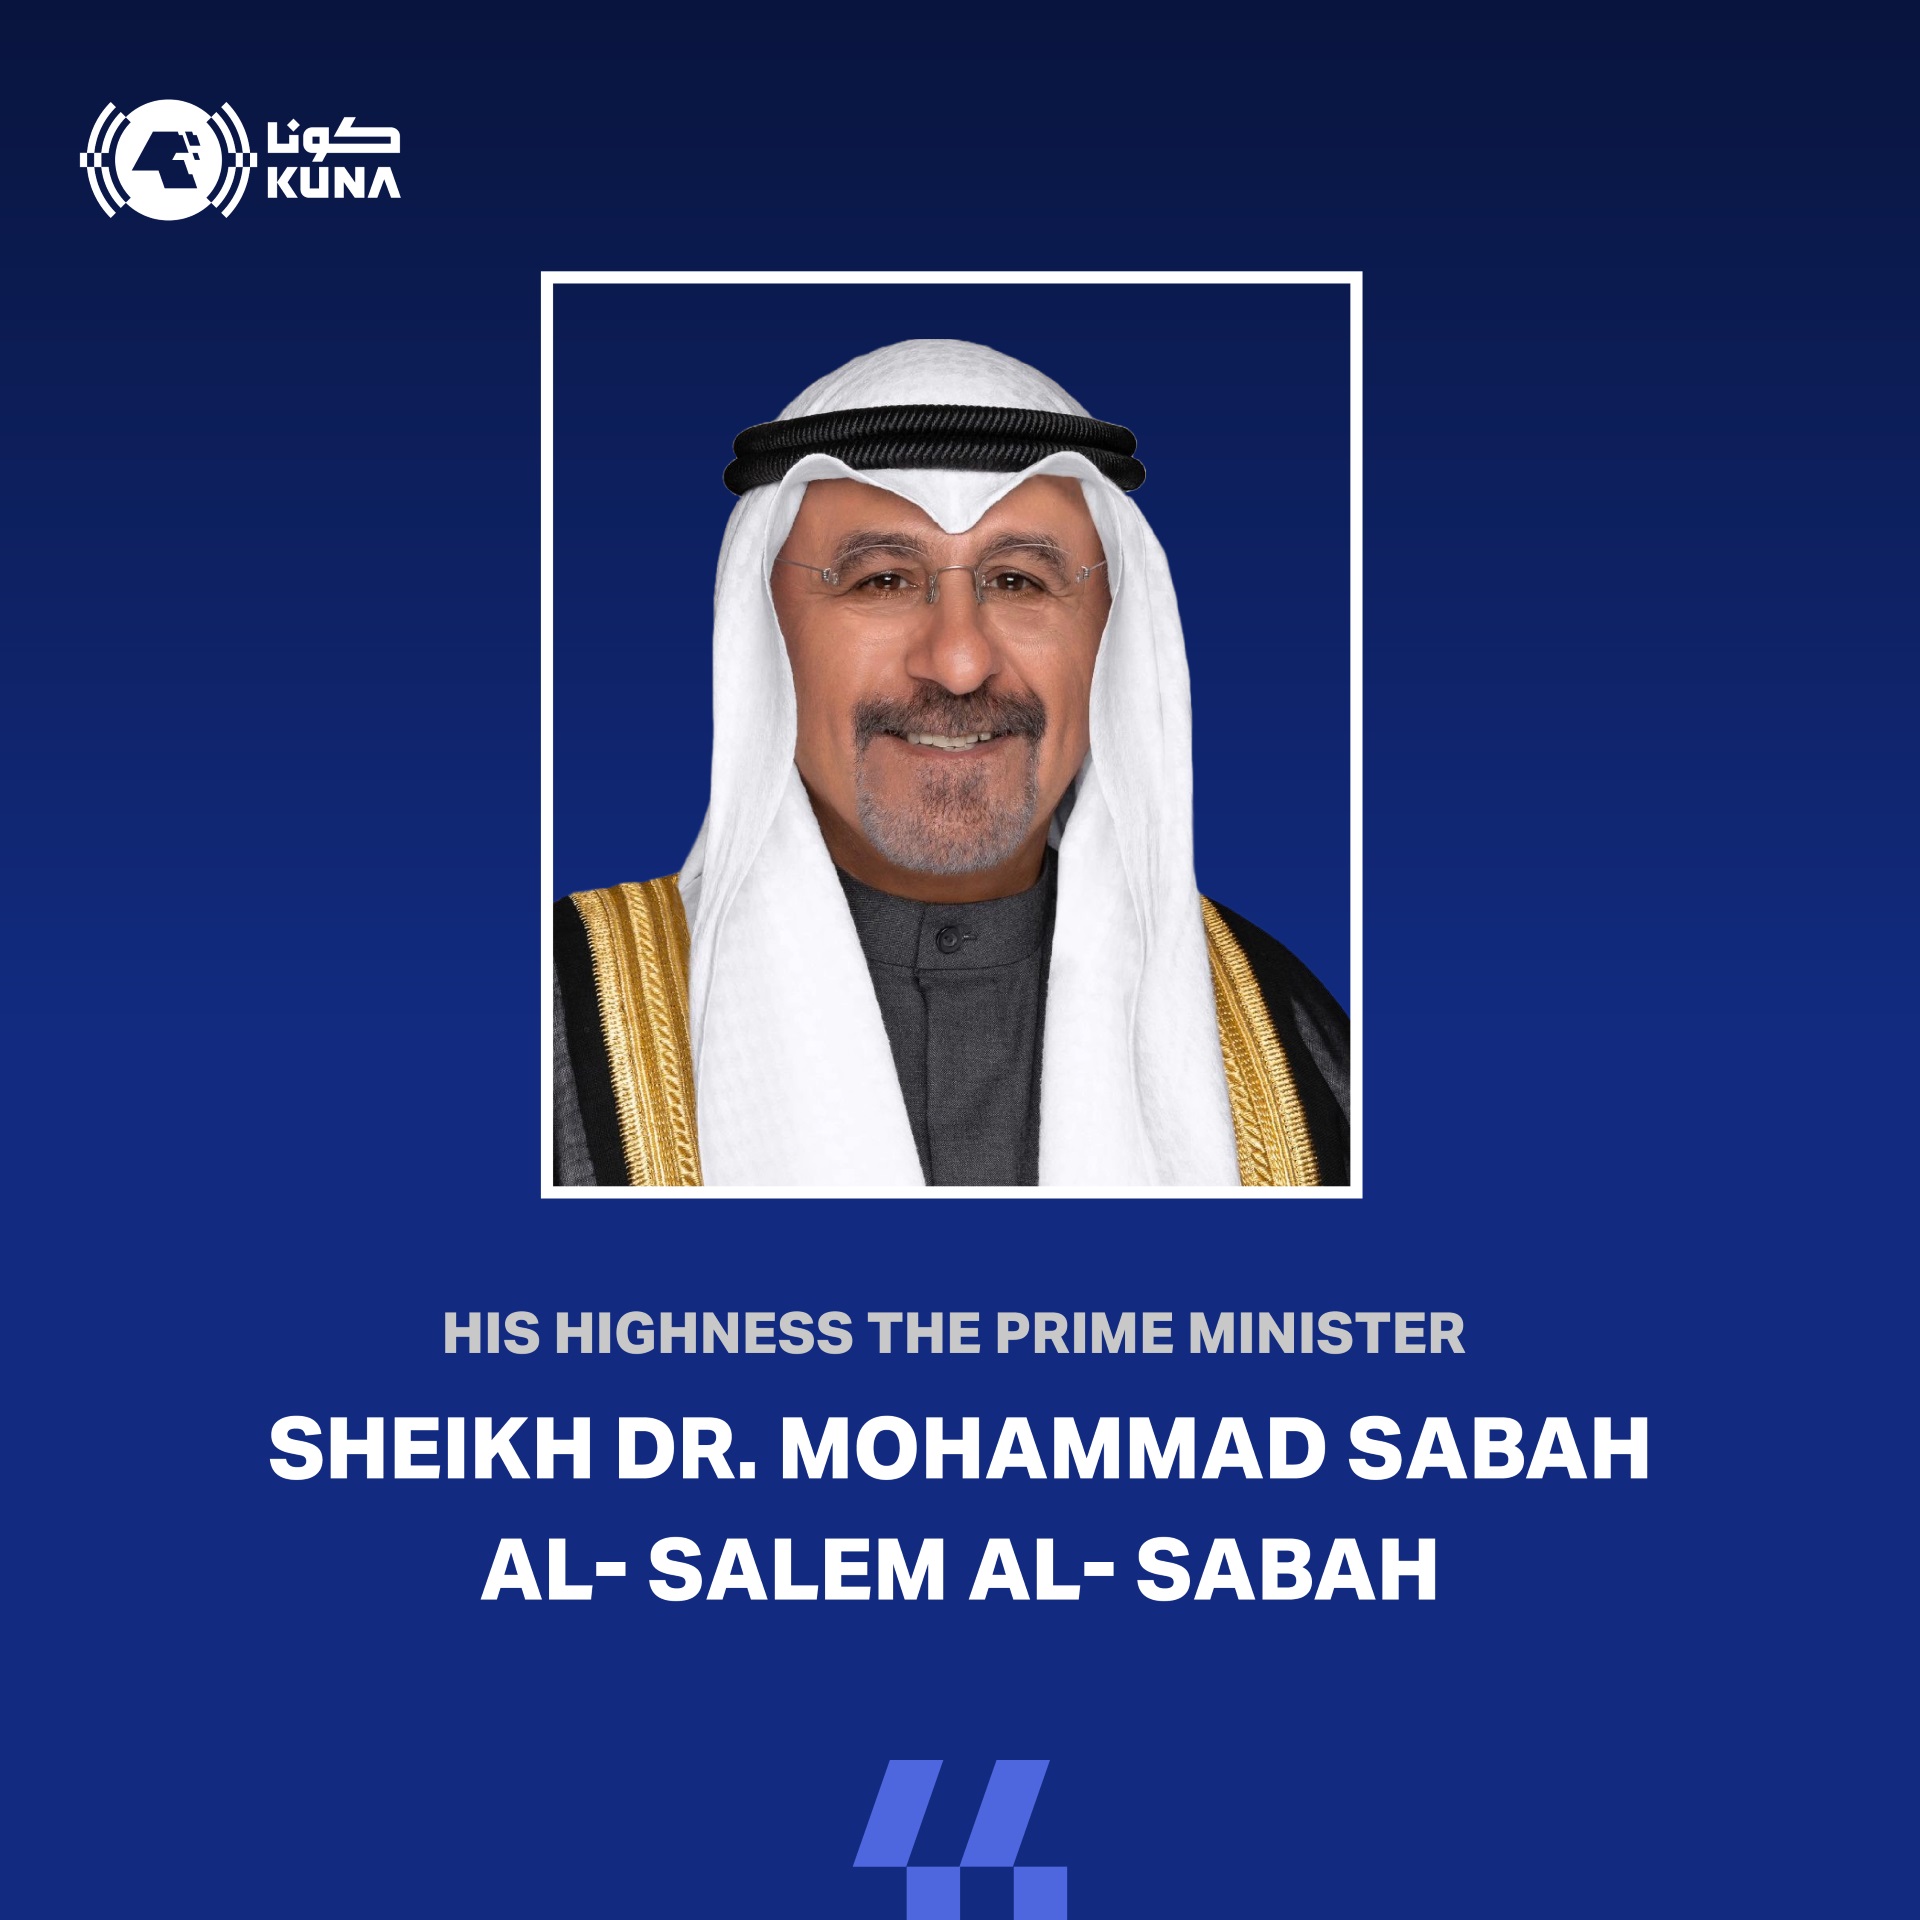 His Highness the Prime Minister Sheikh Dr. Mohammad Sabah Al-Salem Al-Sabah